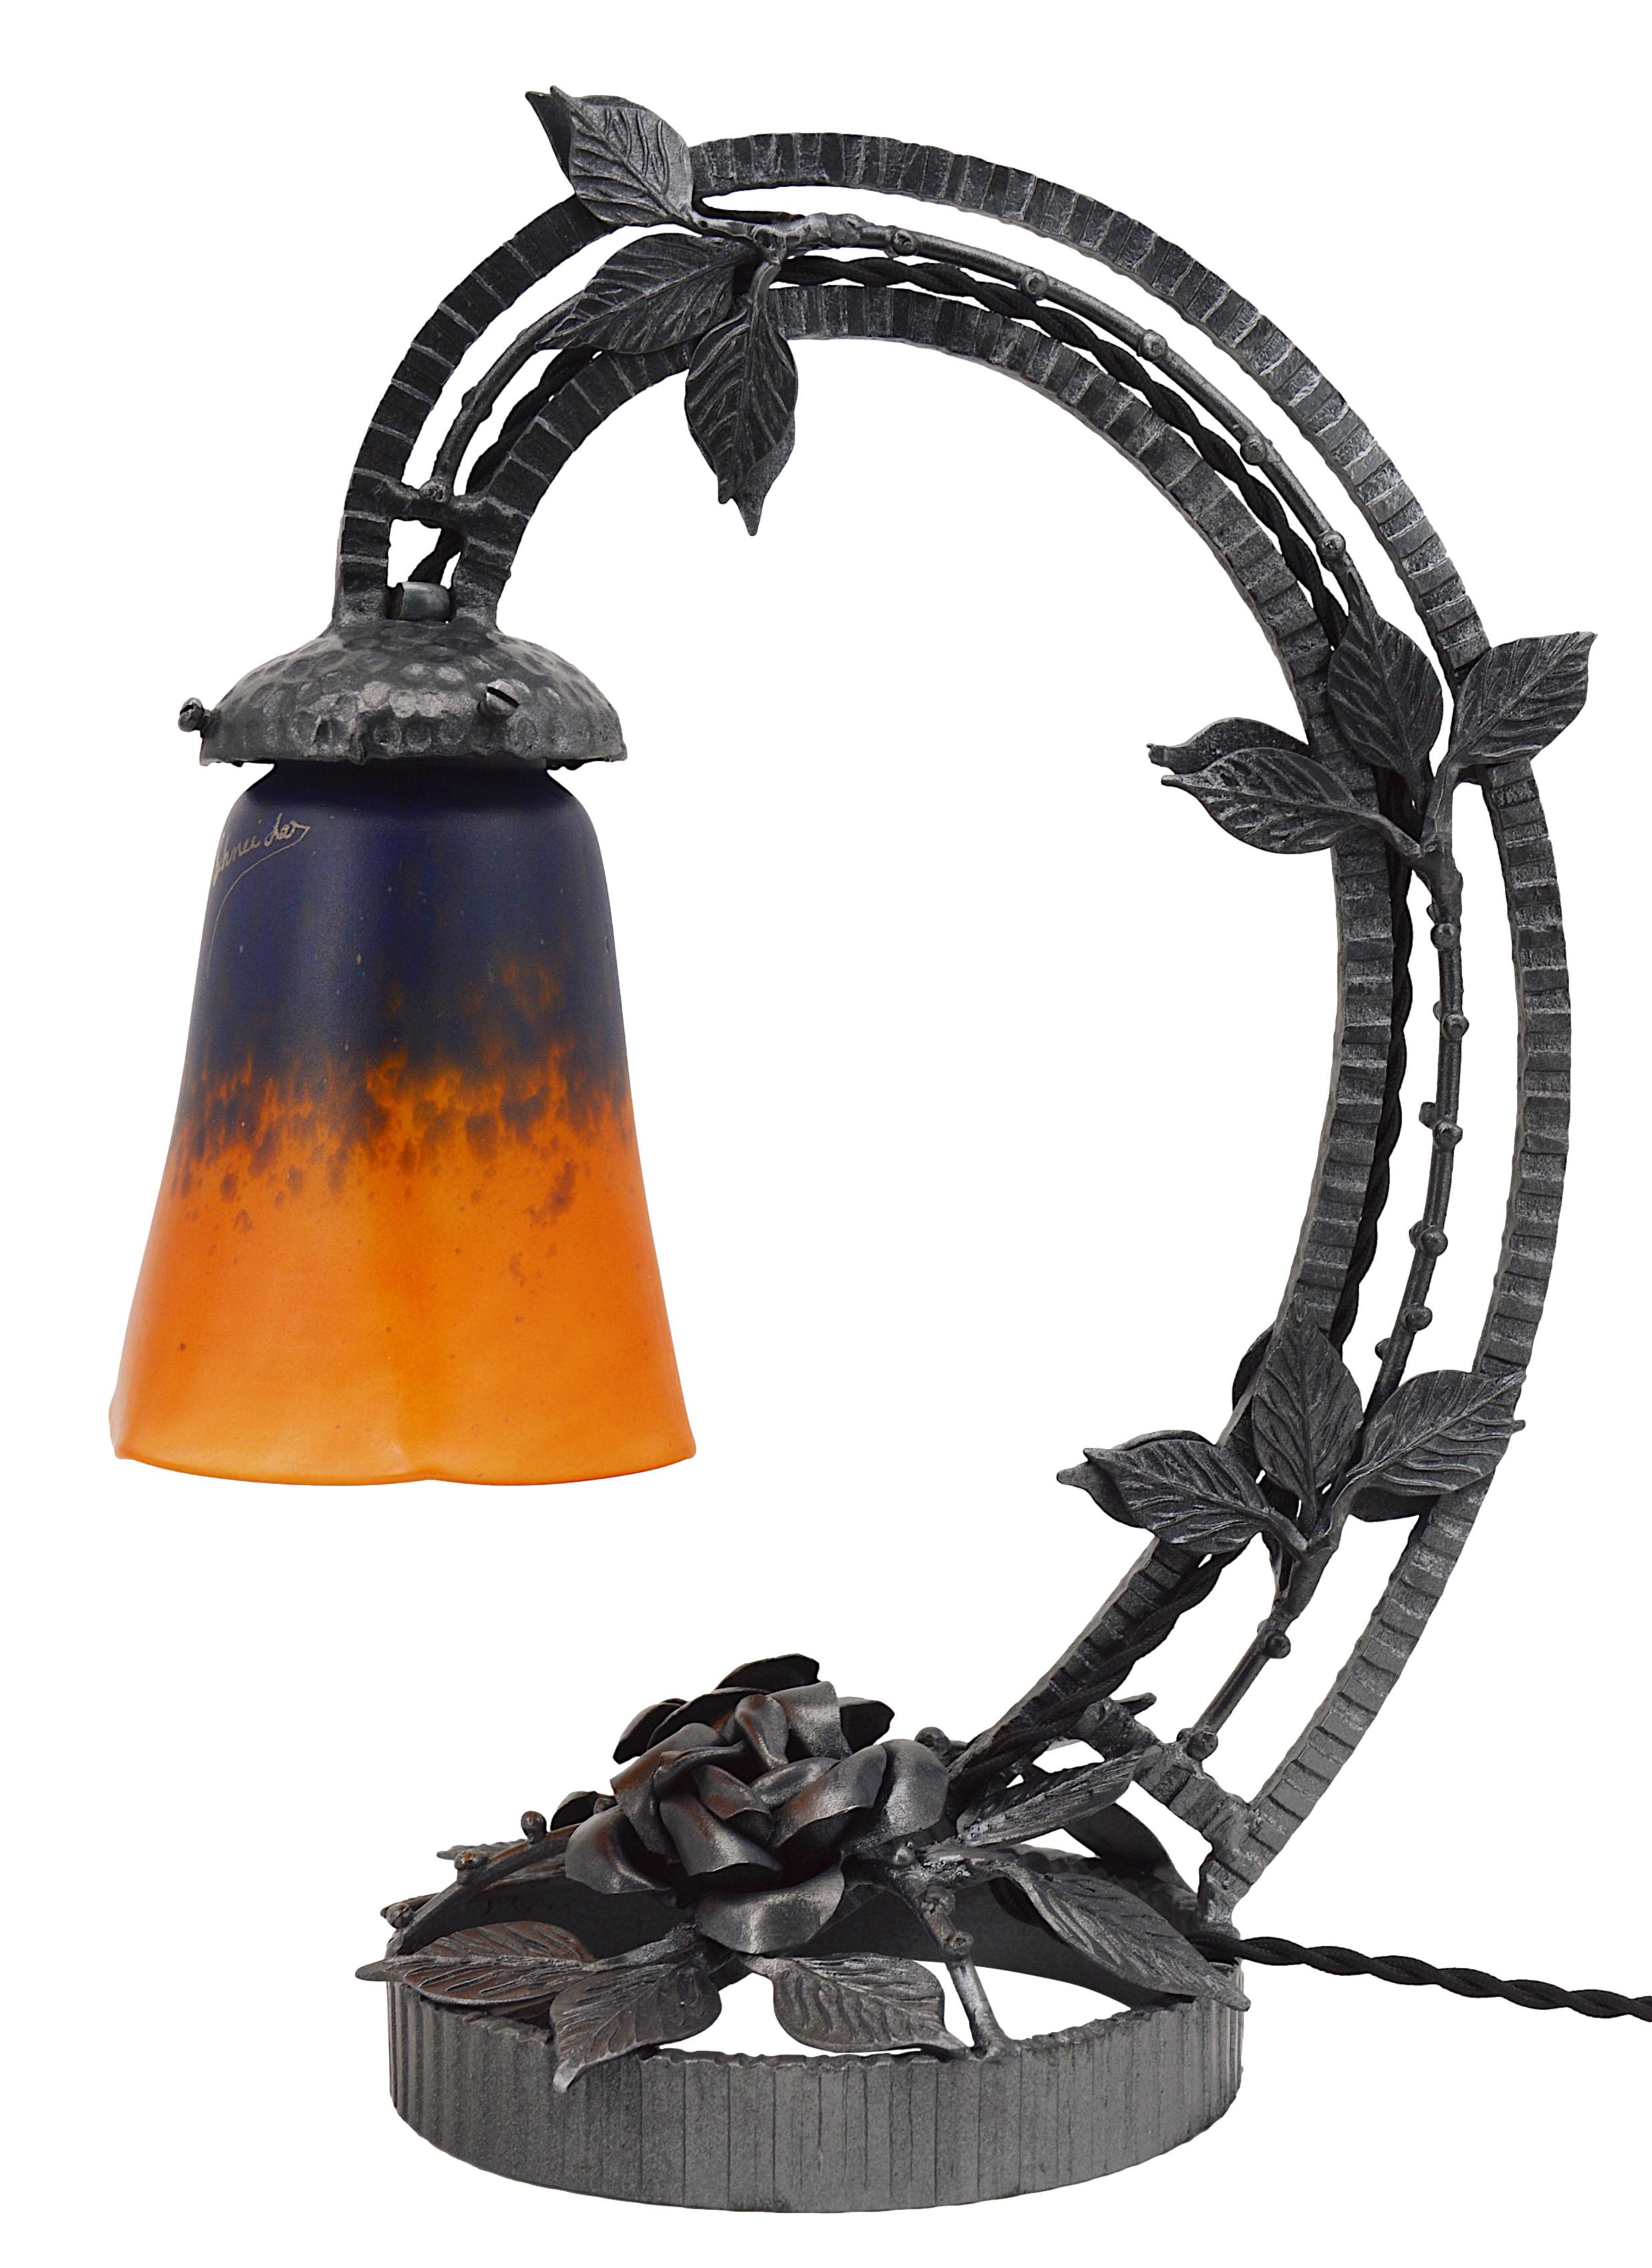 Lampe de table Art déco française par Charles Schneider, Epinay-sur-Seine (Paris), années 1920. Abat-jour en verre tacheté, des poudres sont appliquées entre deux couches, qui vient se suspendre à son superbe socle en fer forgé. Hauteur :